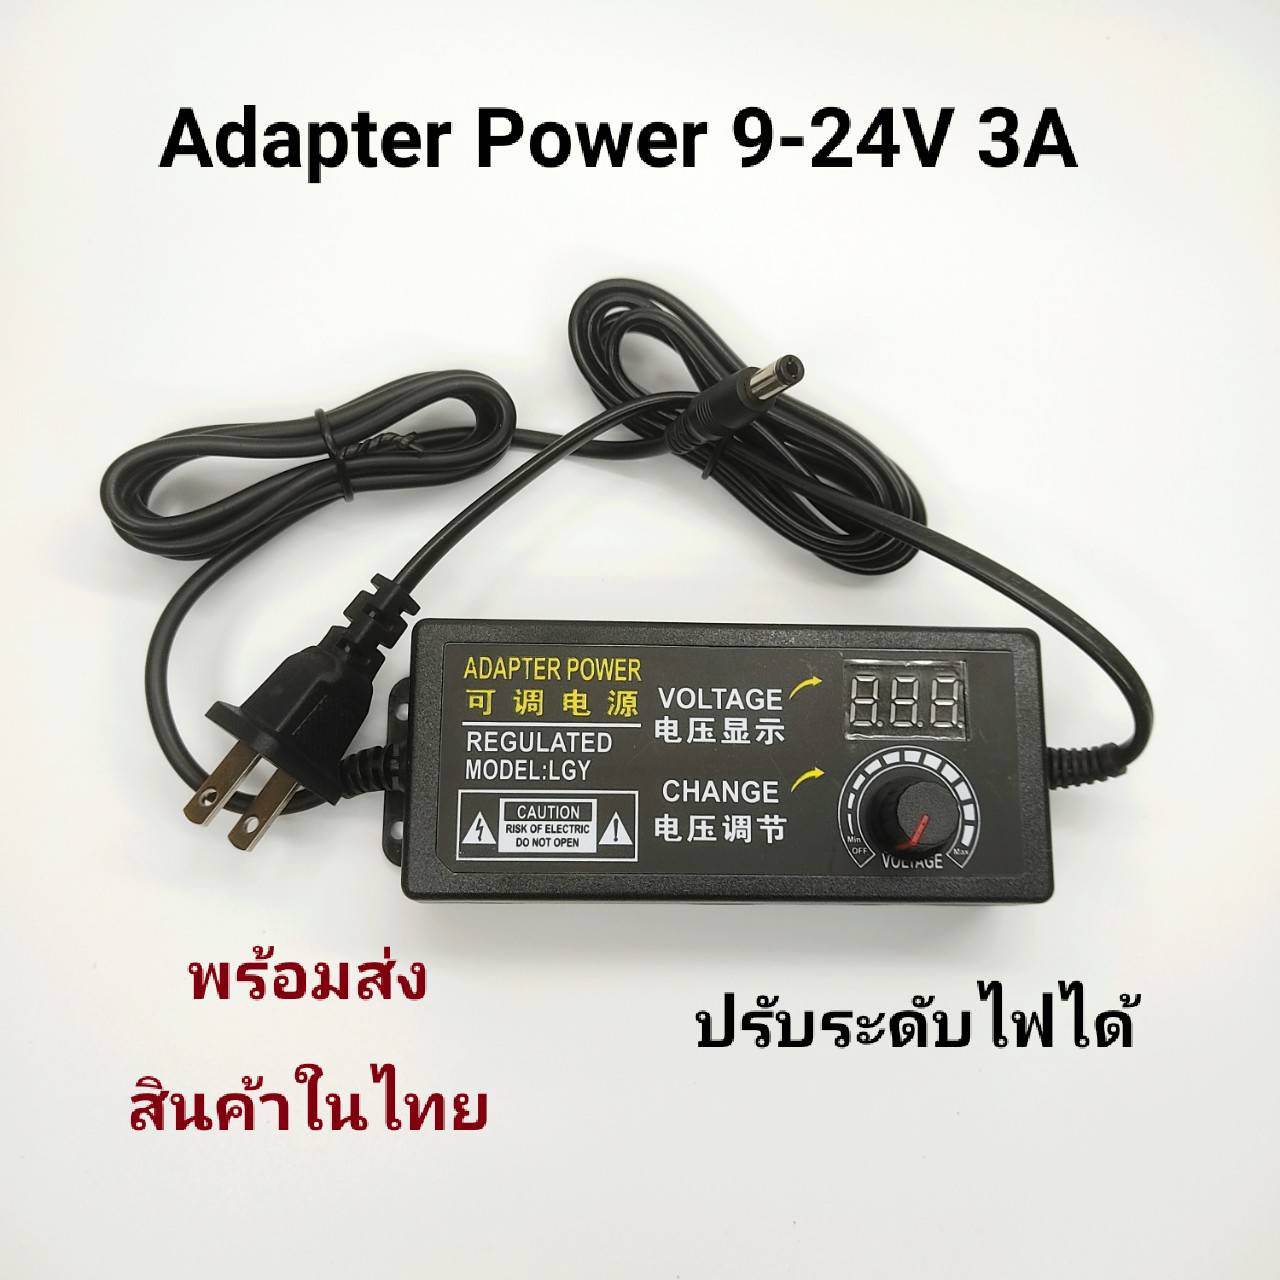 Adapter Power AC 220V To DC 9-24V  3A ปรับระดับไฟได้ตั้งแต่ 9-24V 3A